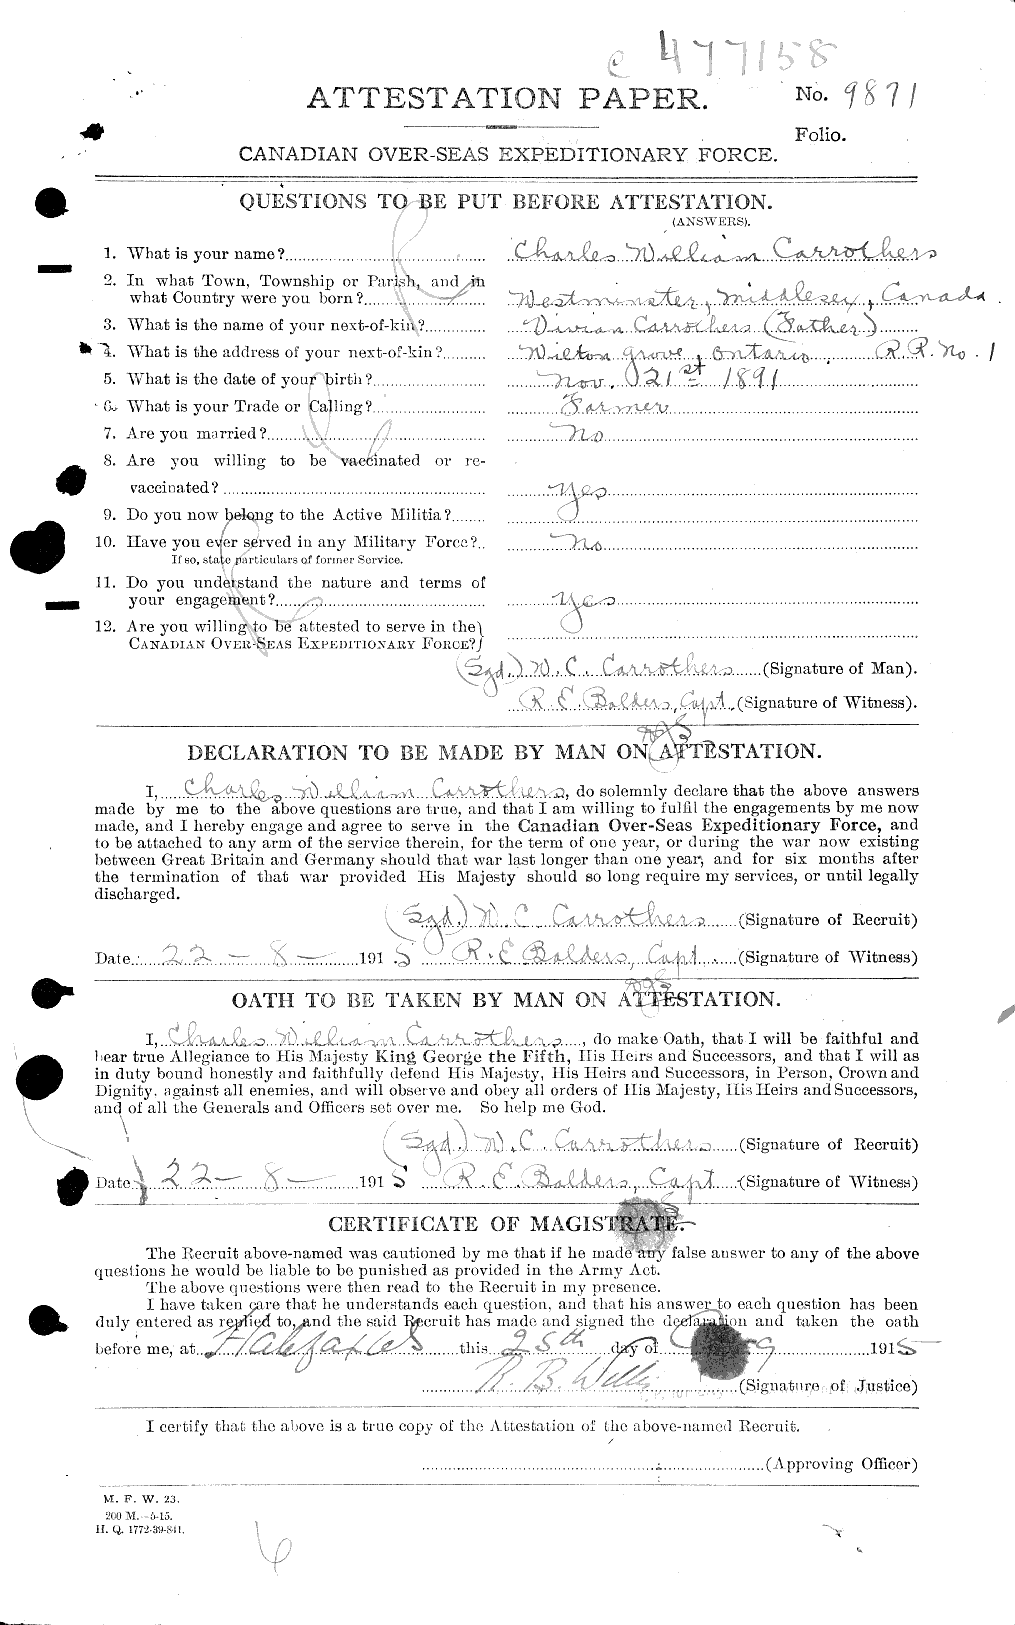 Dossiers du Personnel de la Première Guerre mondiale - CEC 010646a